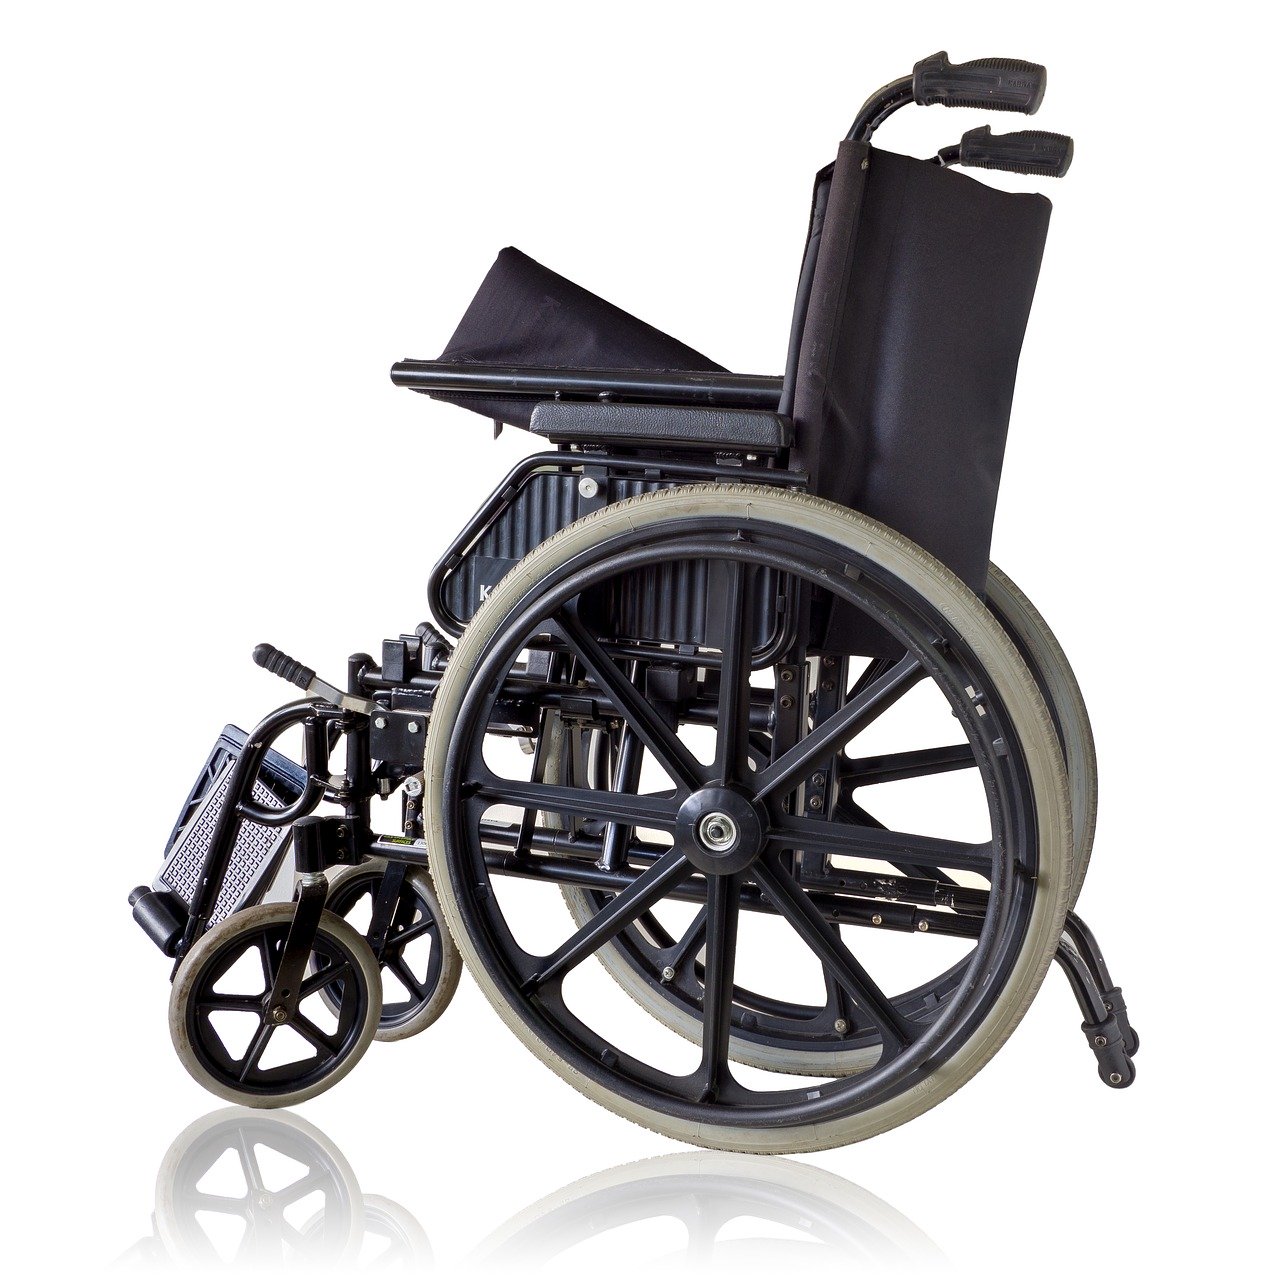 Wózek inwalidzki – jakie ma zalety?